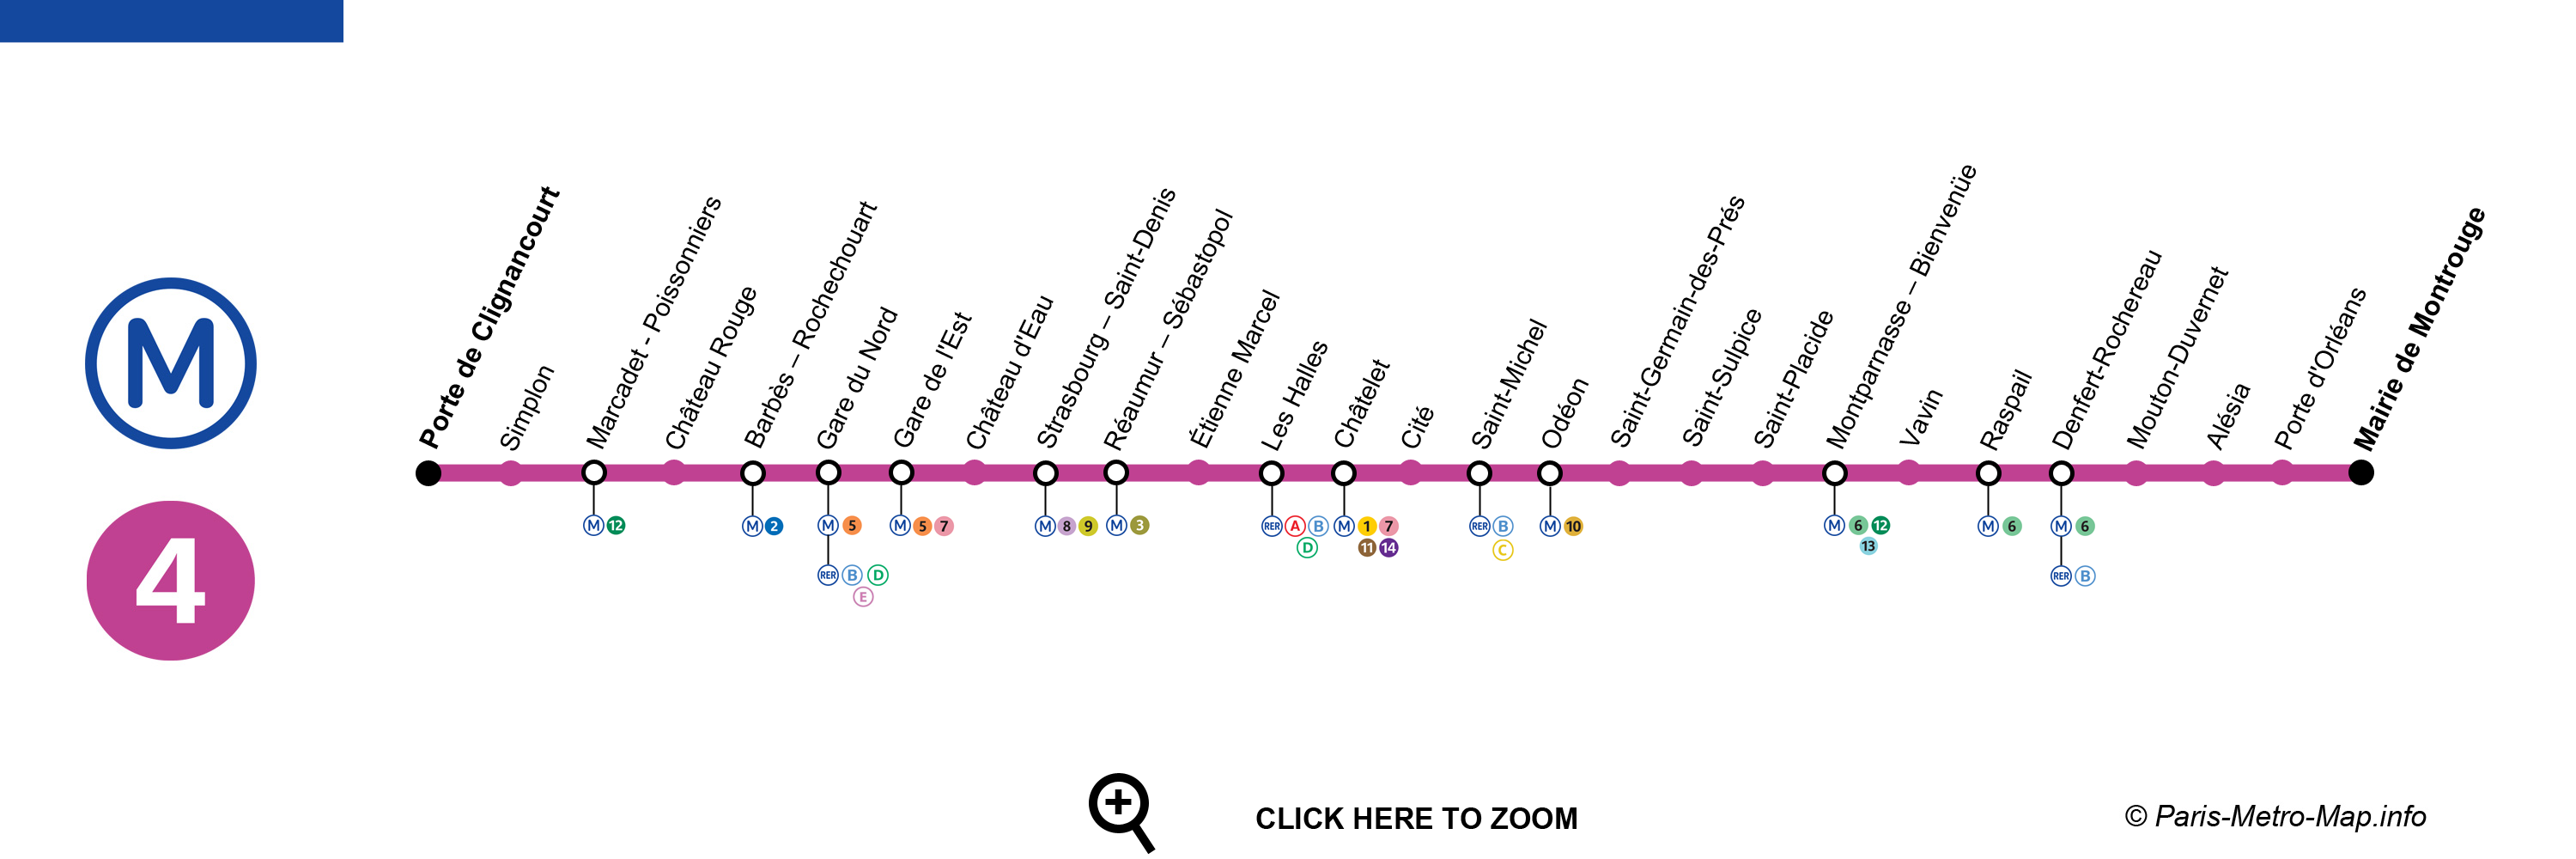 Paris metro line 4 map